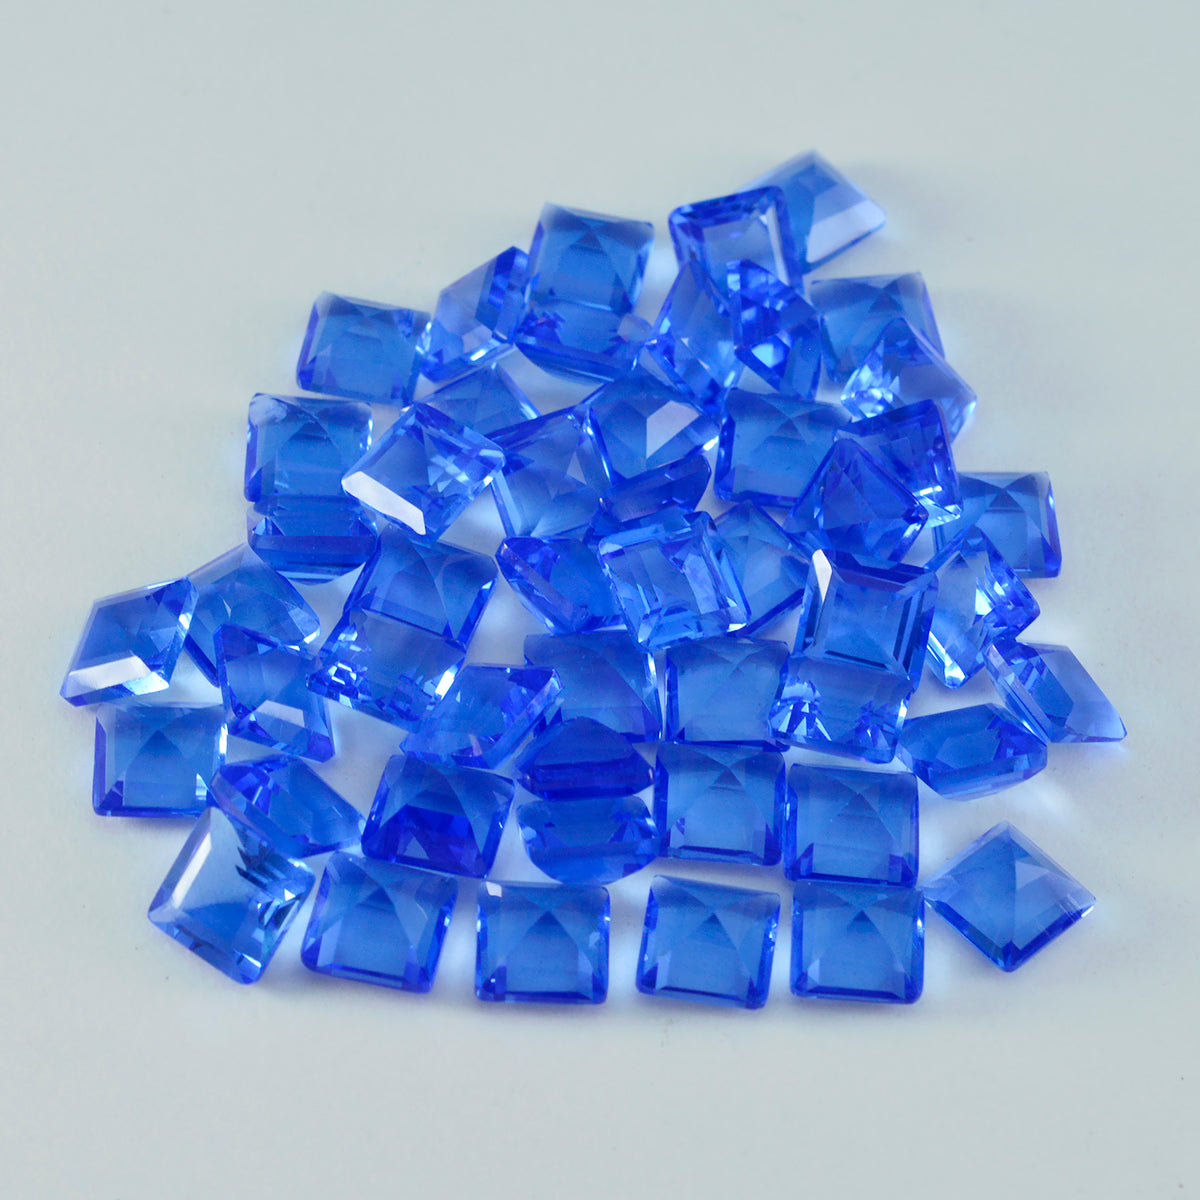 Riyogems 1pc saphir bleu cz facettes 7x7mm forme carrée belles pierres précieuses de qualité